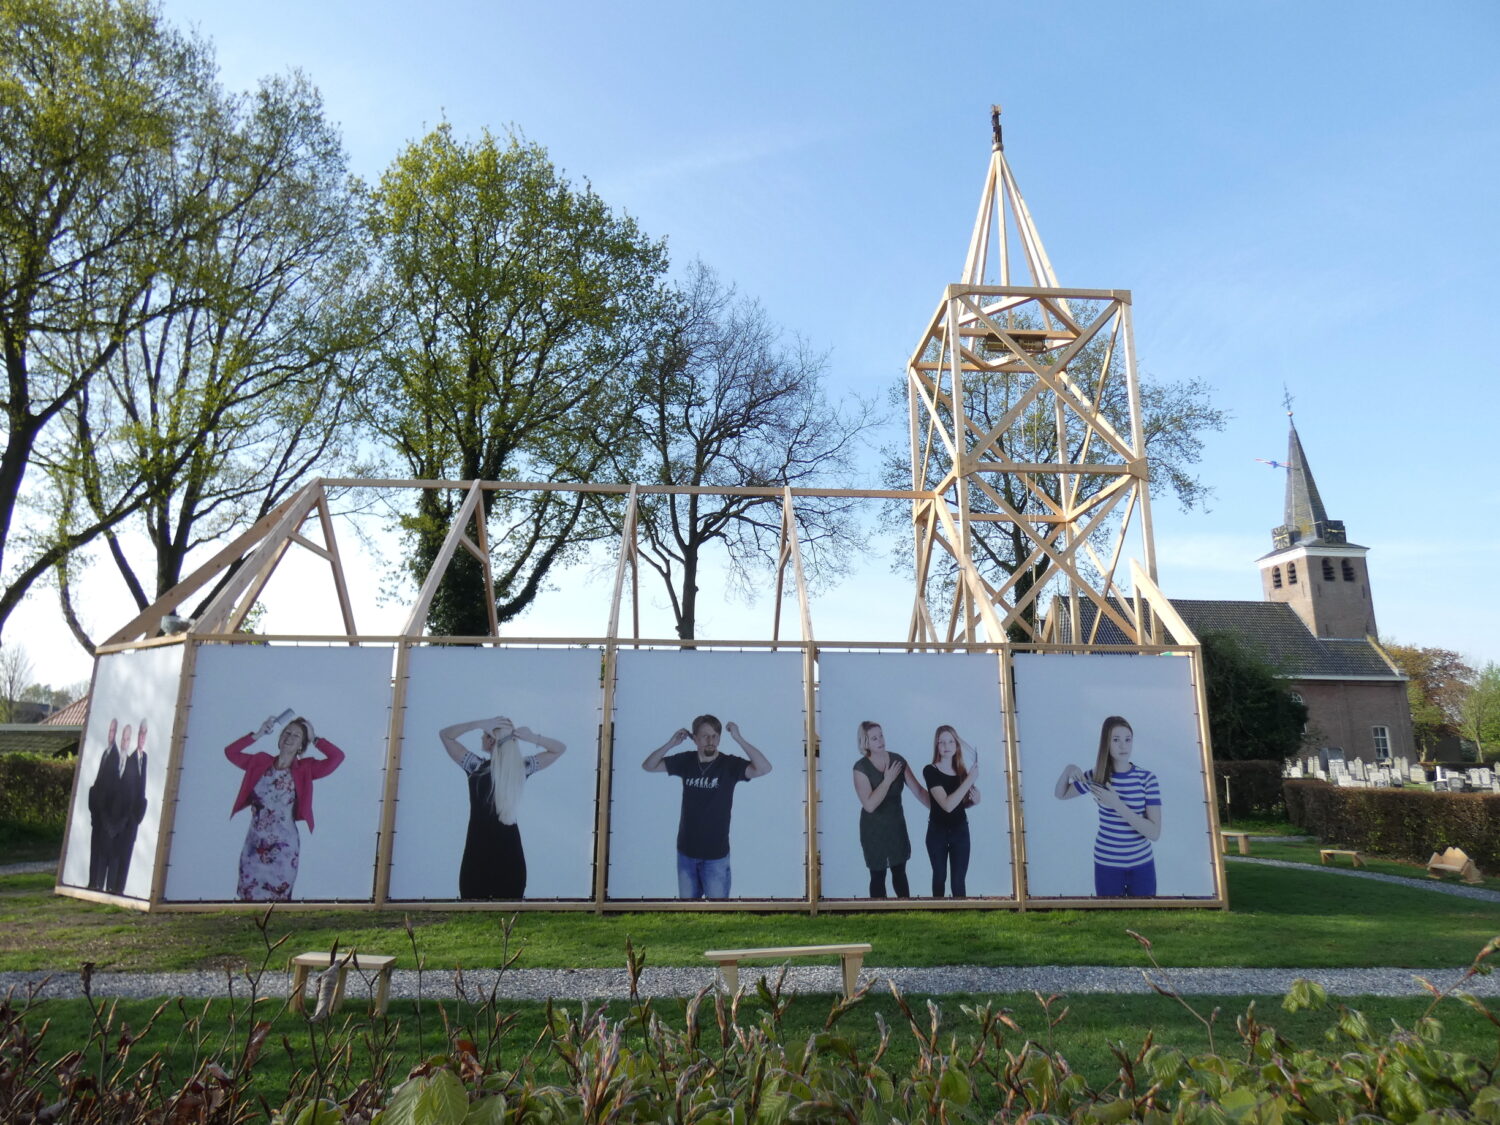 Haren in de Wind replicakerk, buitenmuur fotoportretten Haren-in-de-Wind-kunstproject, beeldende-kunst-lf2018, kunstenaar-Wietske-Lycklama-à-Nijeholt, kunstinstallatie openbare ruimte 